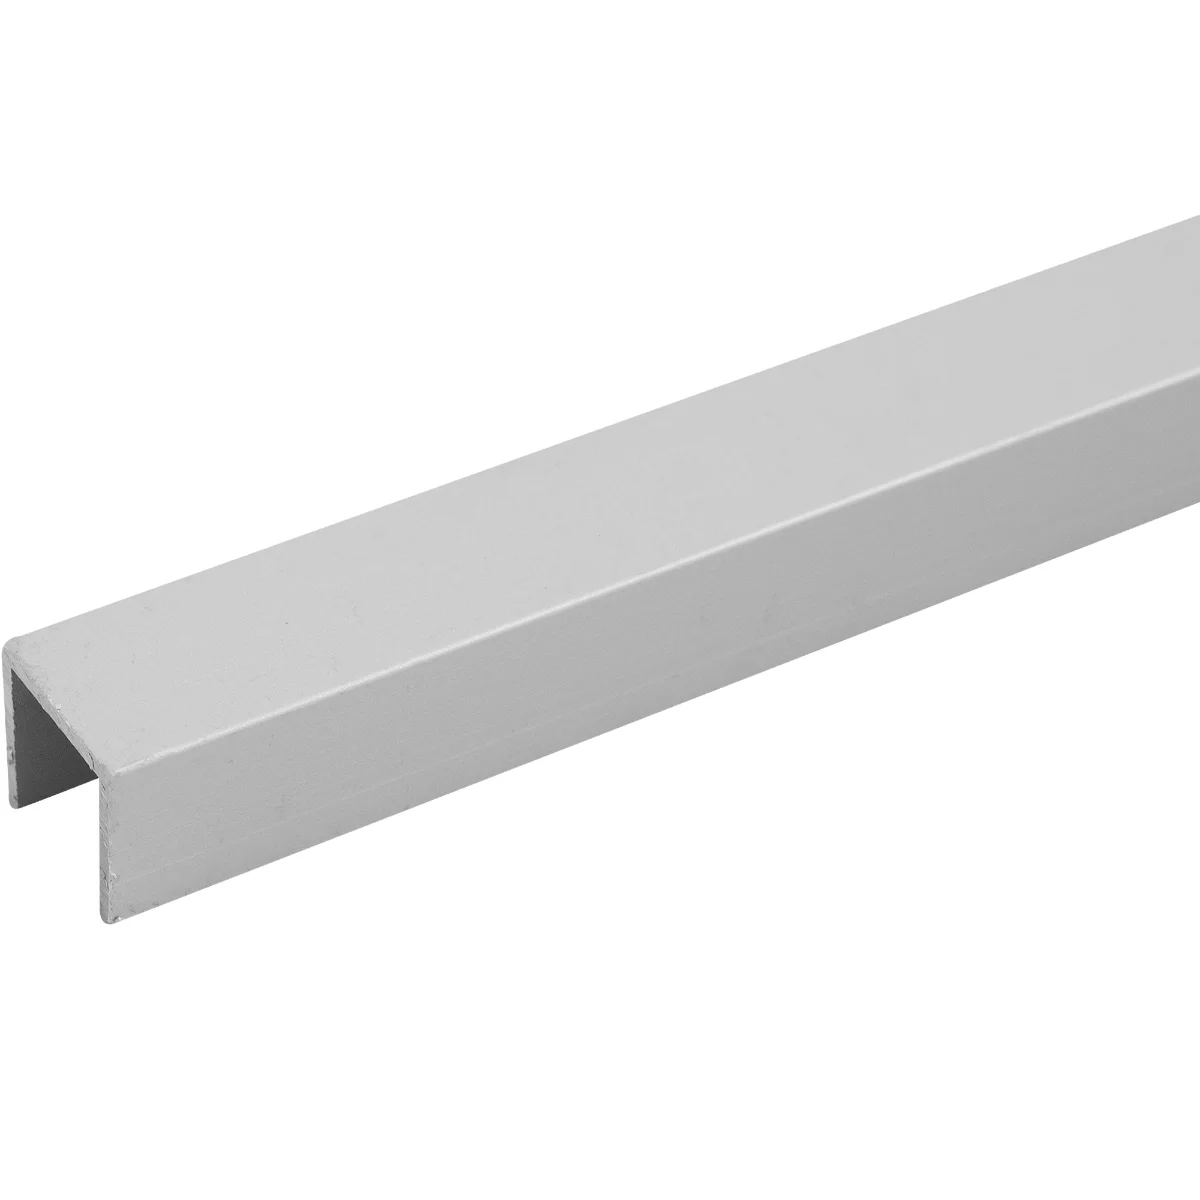 Торцевая планка П-образная для стеновой панели 6 мм